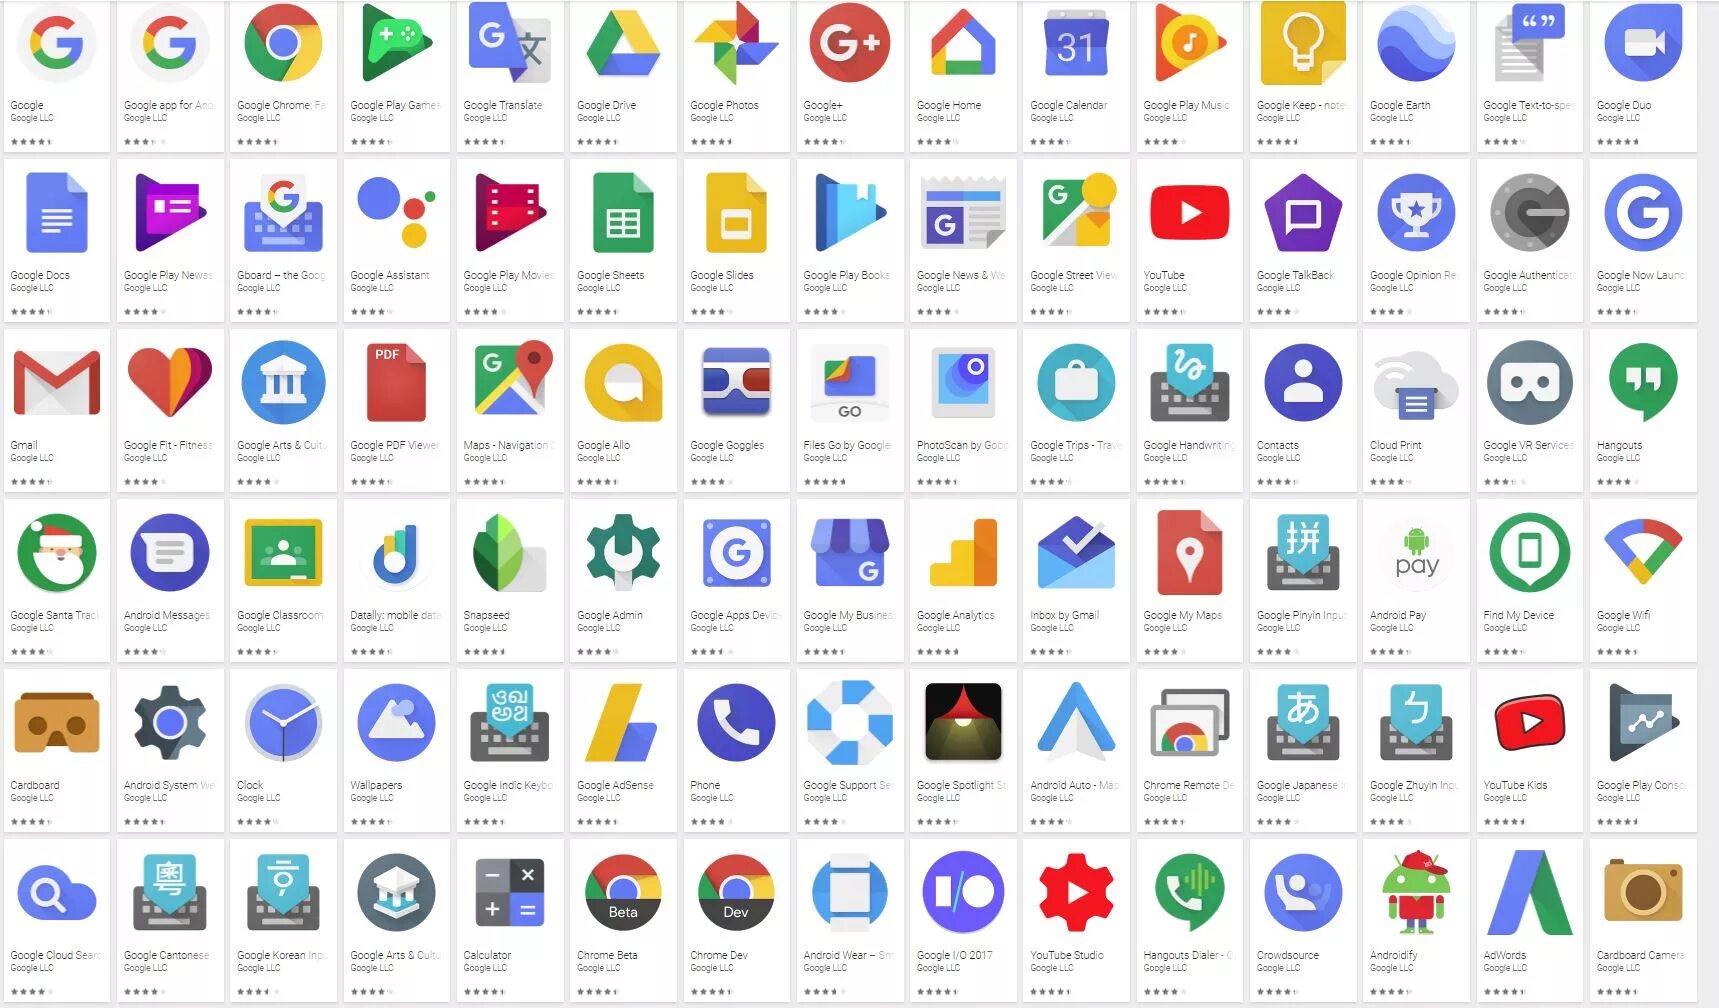 Url google apps. Google apps. Google applications. Сервисы гугл. Логотипы сервисов гугл.